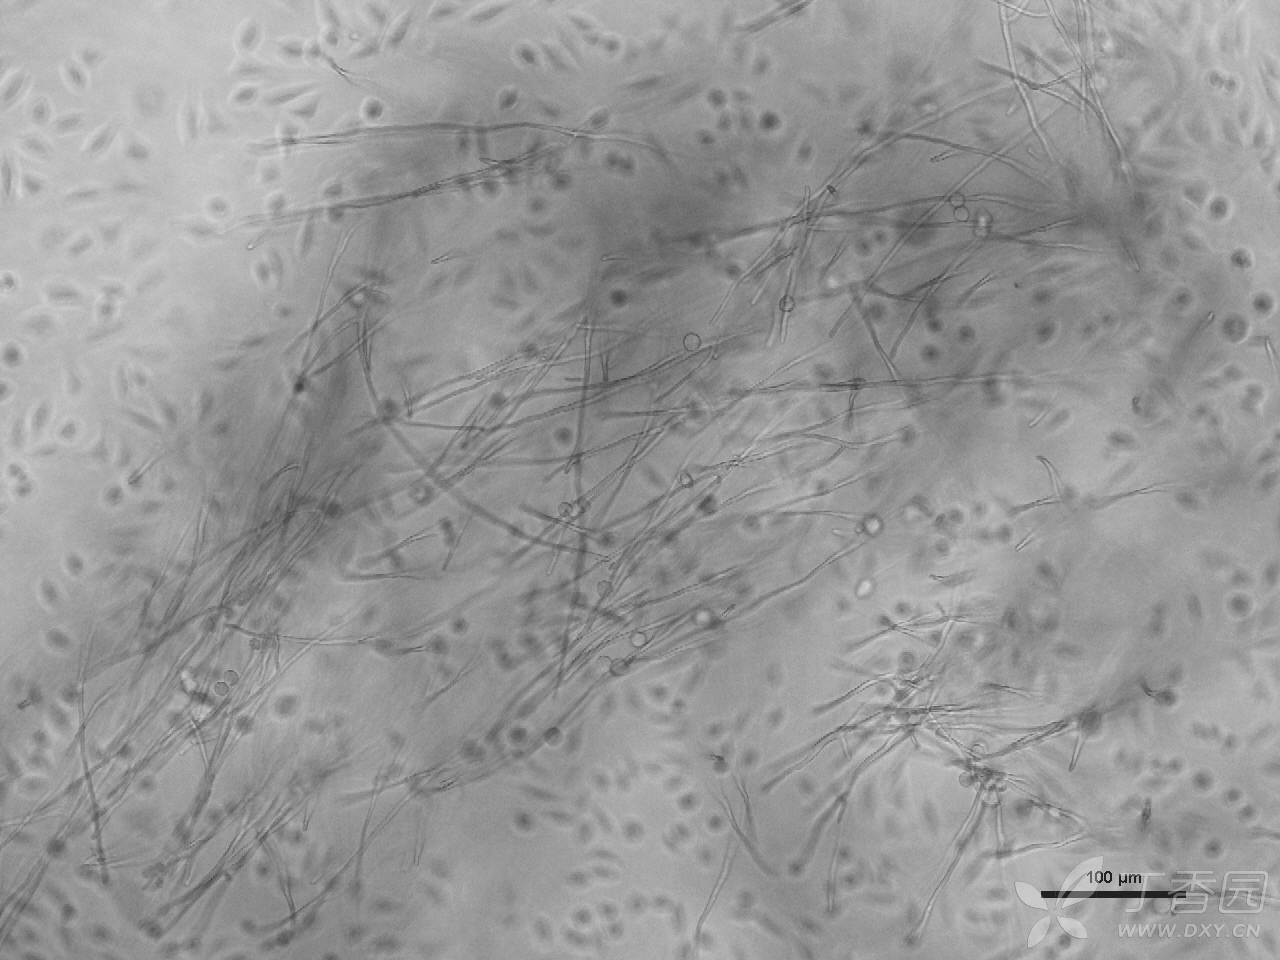 常见菌类污染图片示例 细胞技术讨论版-丁香园论坛